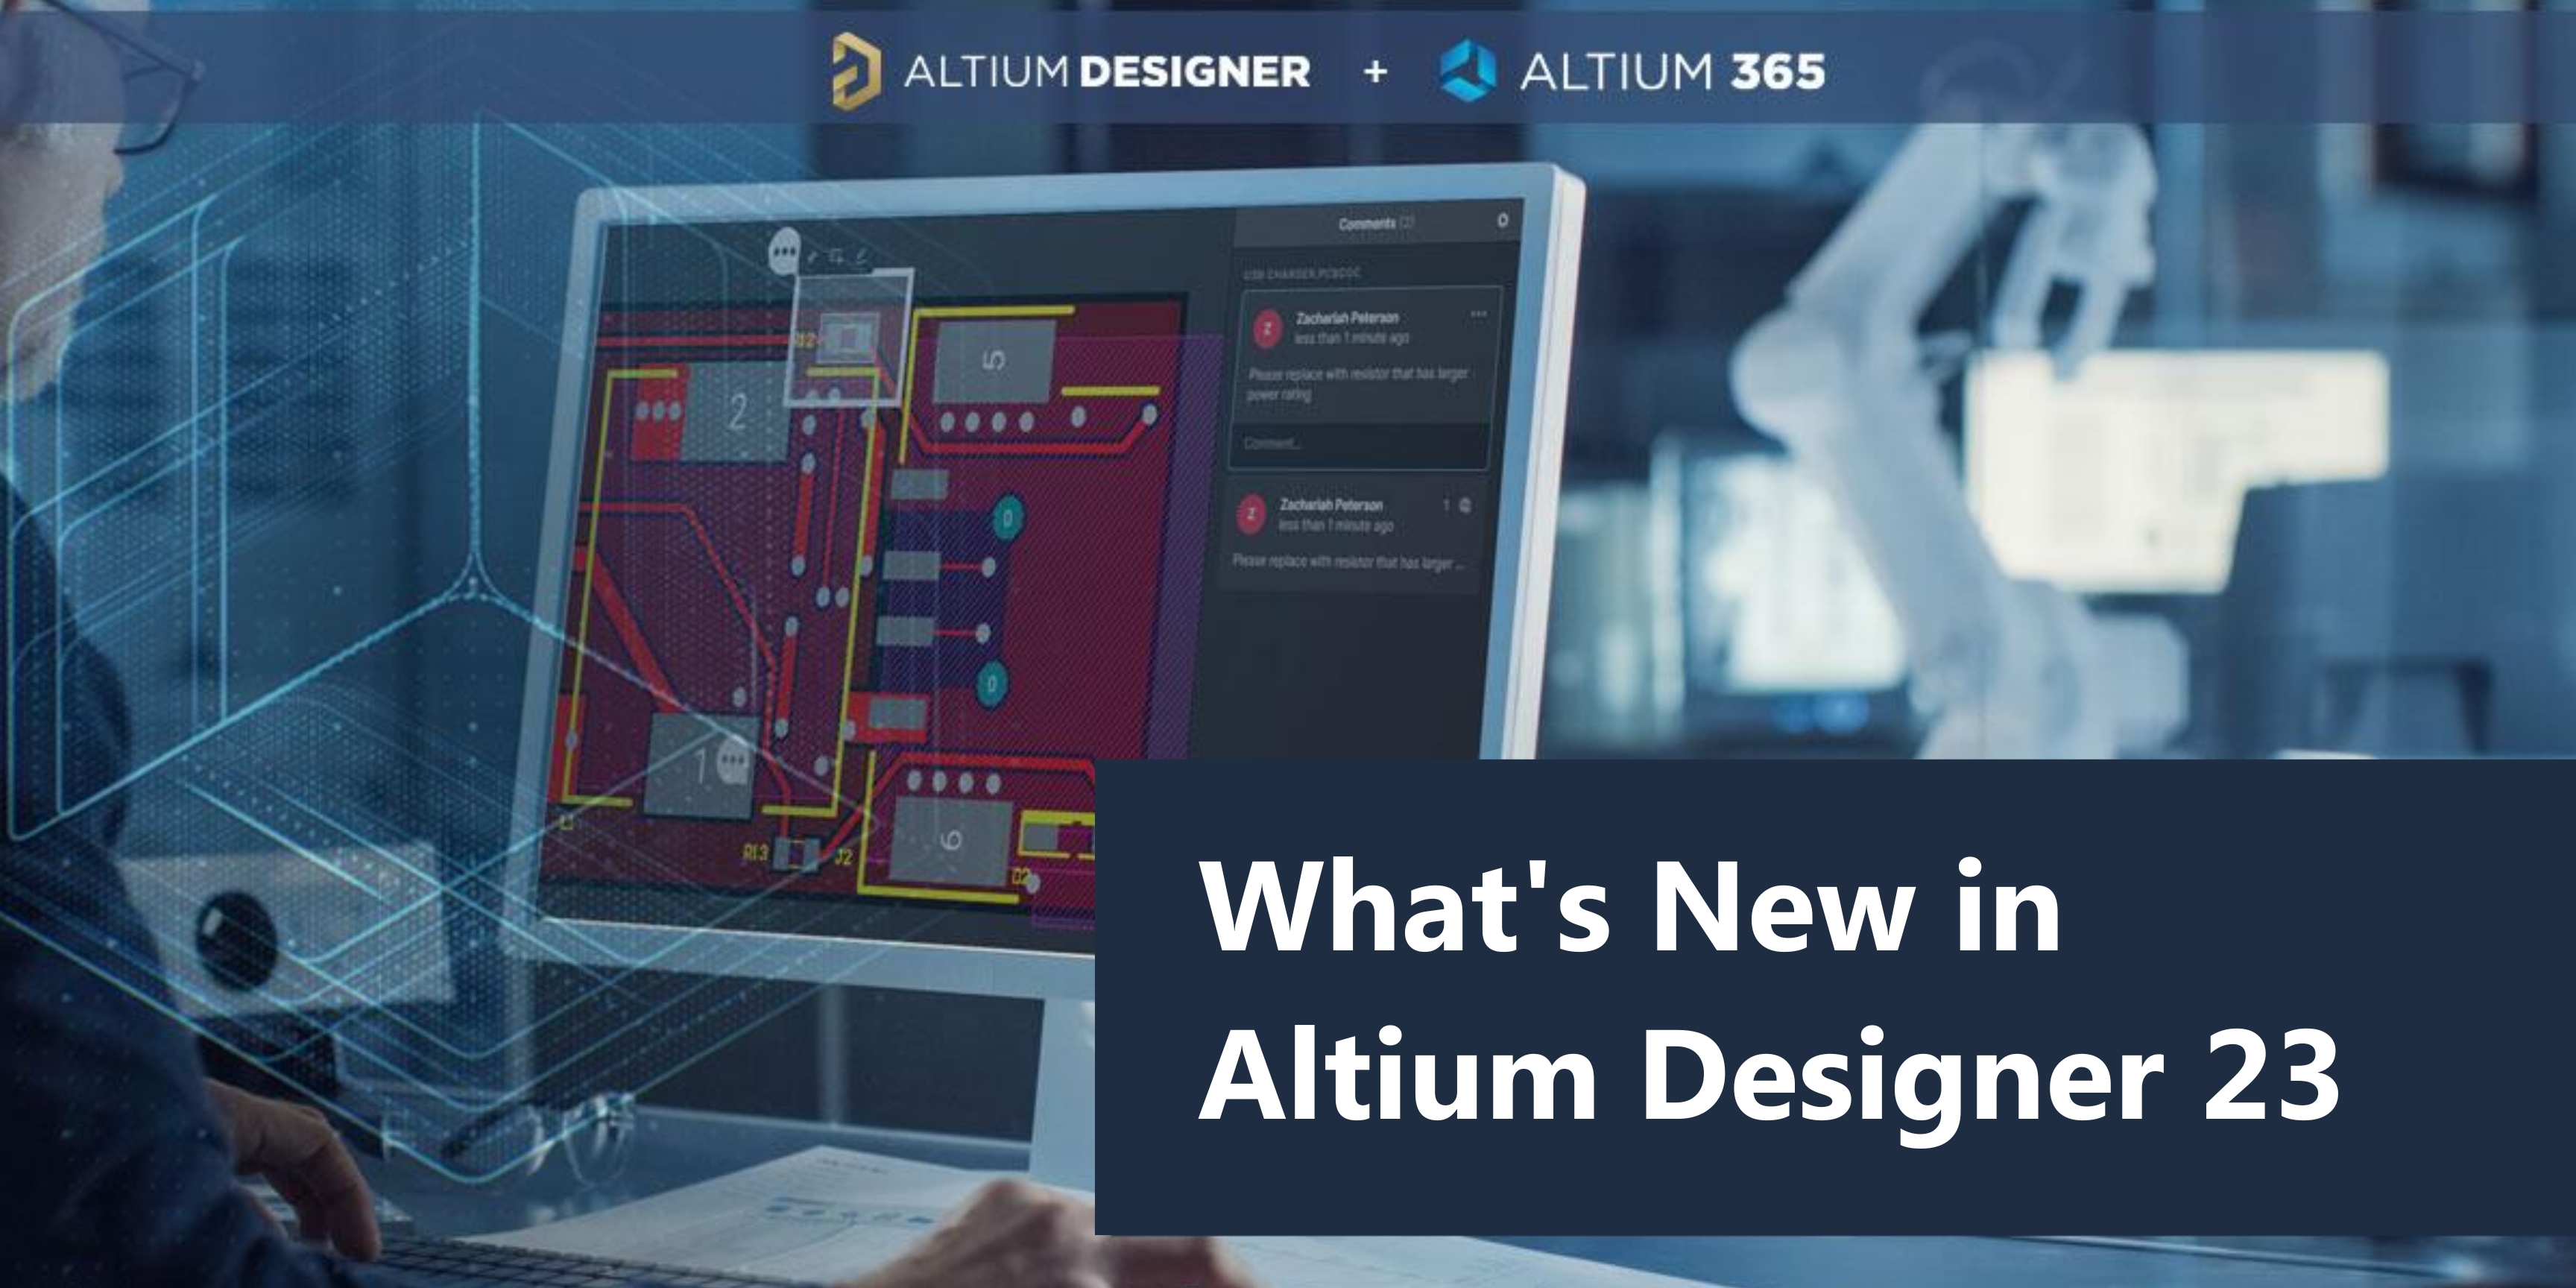 download the last version for ios Altium Designer 23.9.2.47